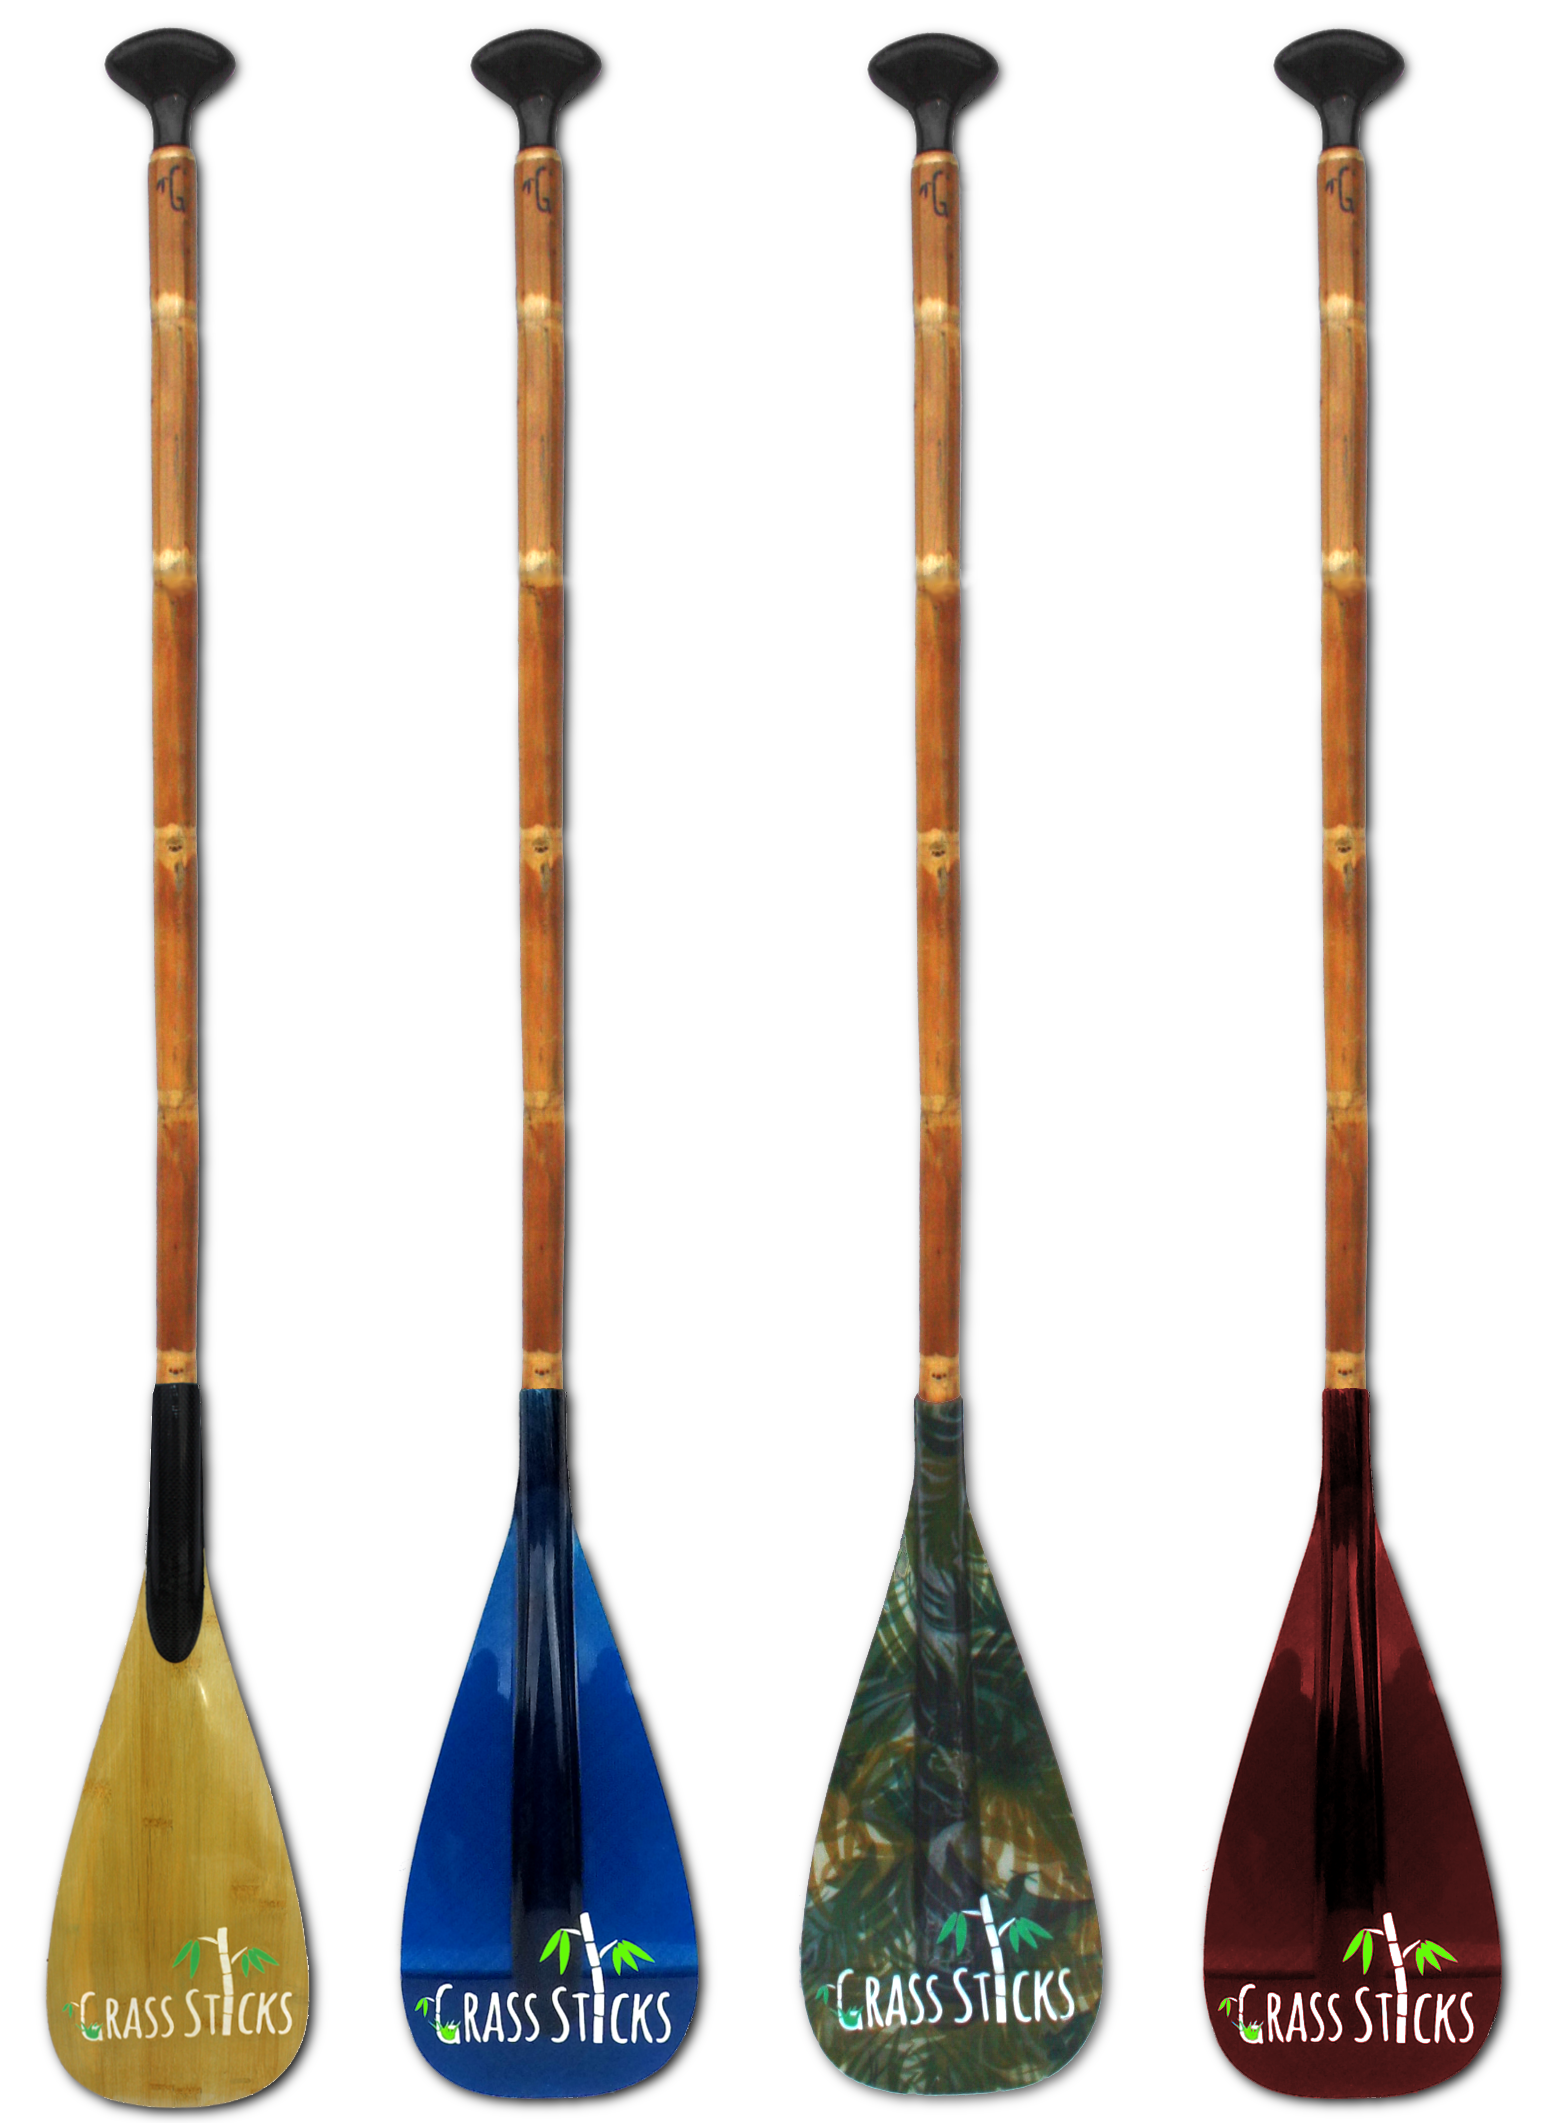 Grass Sticks Debuts Bamboo Canoe Paddle - Paddling Magazine